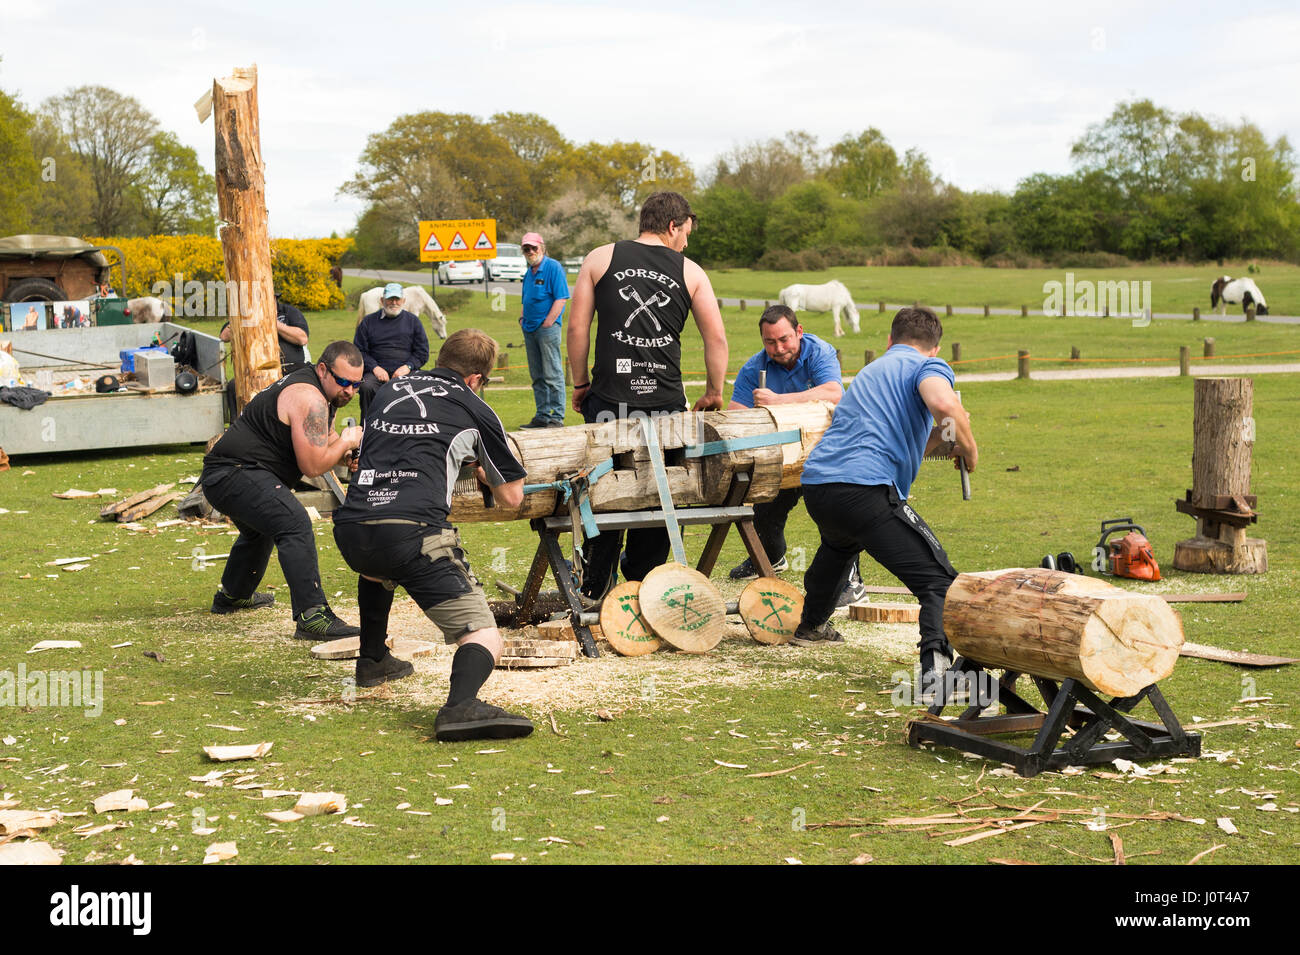 Godshill, New Forest, Hampshire, Regno Unito, 16th aprile 2017. Il team espositore Dorset Axmen ha messo in mostra una serie di abilità al lumberjack. Foto Stock